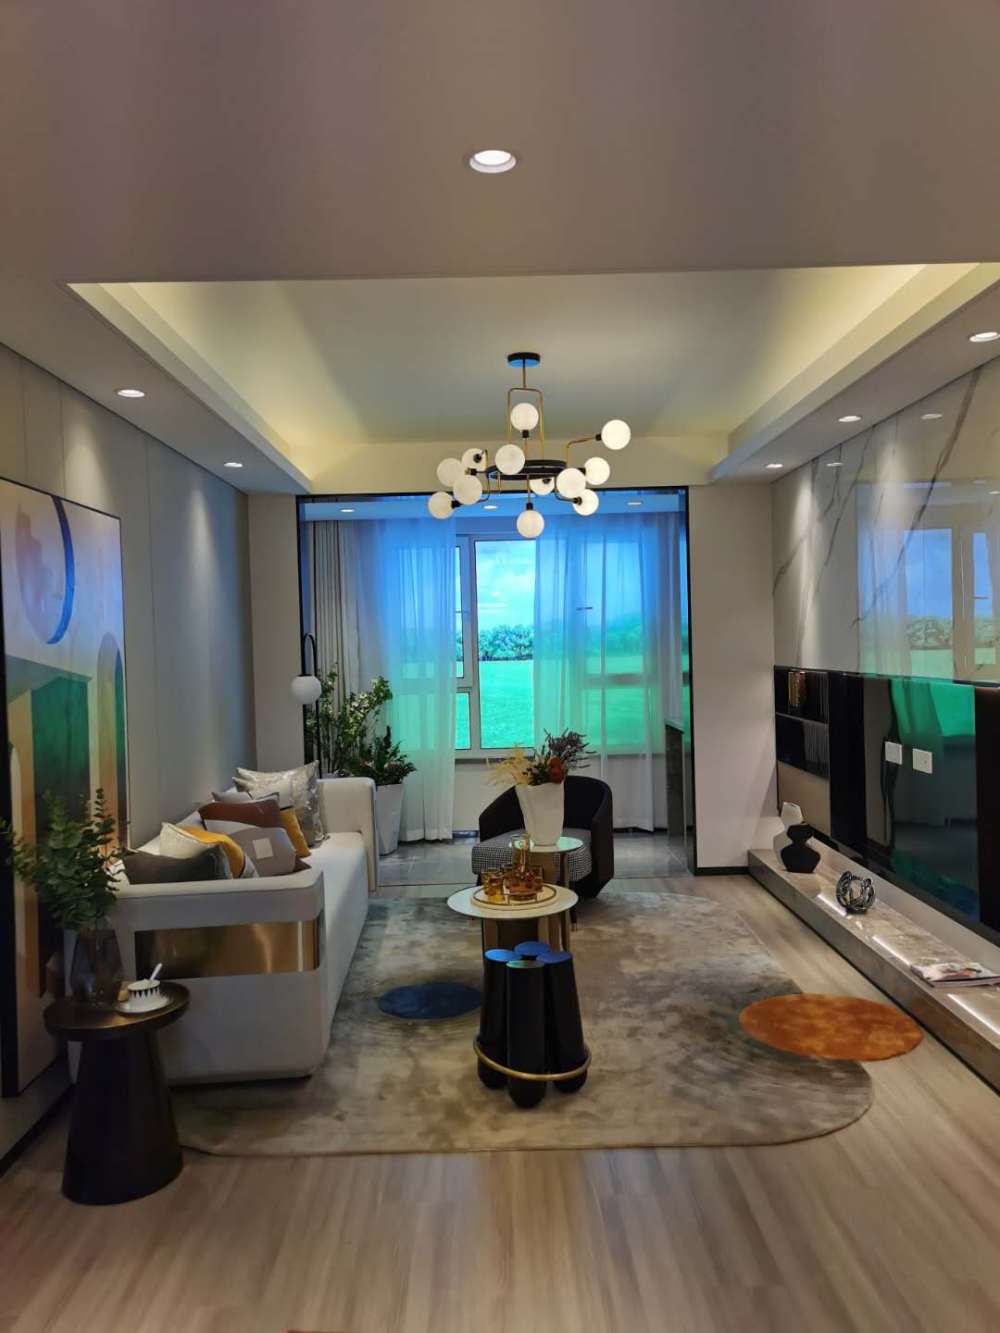 西棠观樾 新推出105平小三室 两室客厅朝阳采光好 带连廊 通透性好